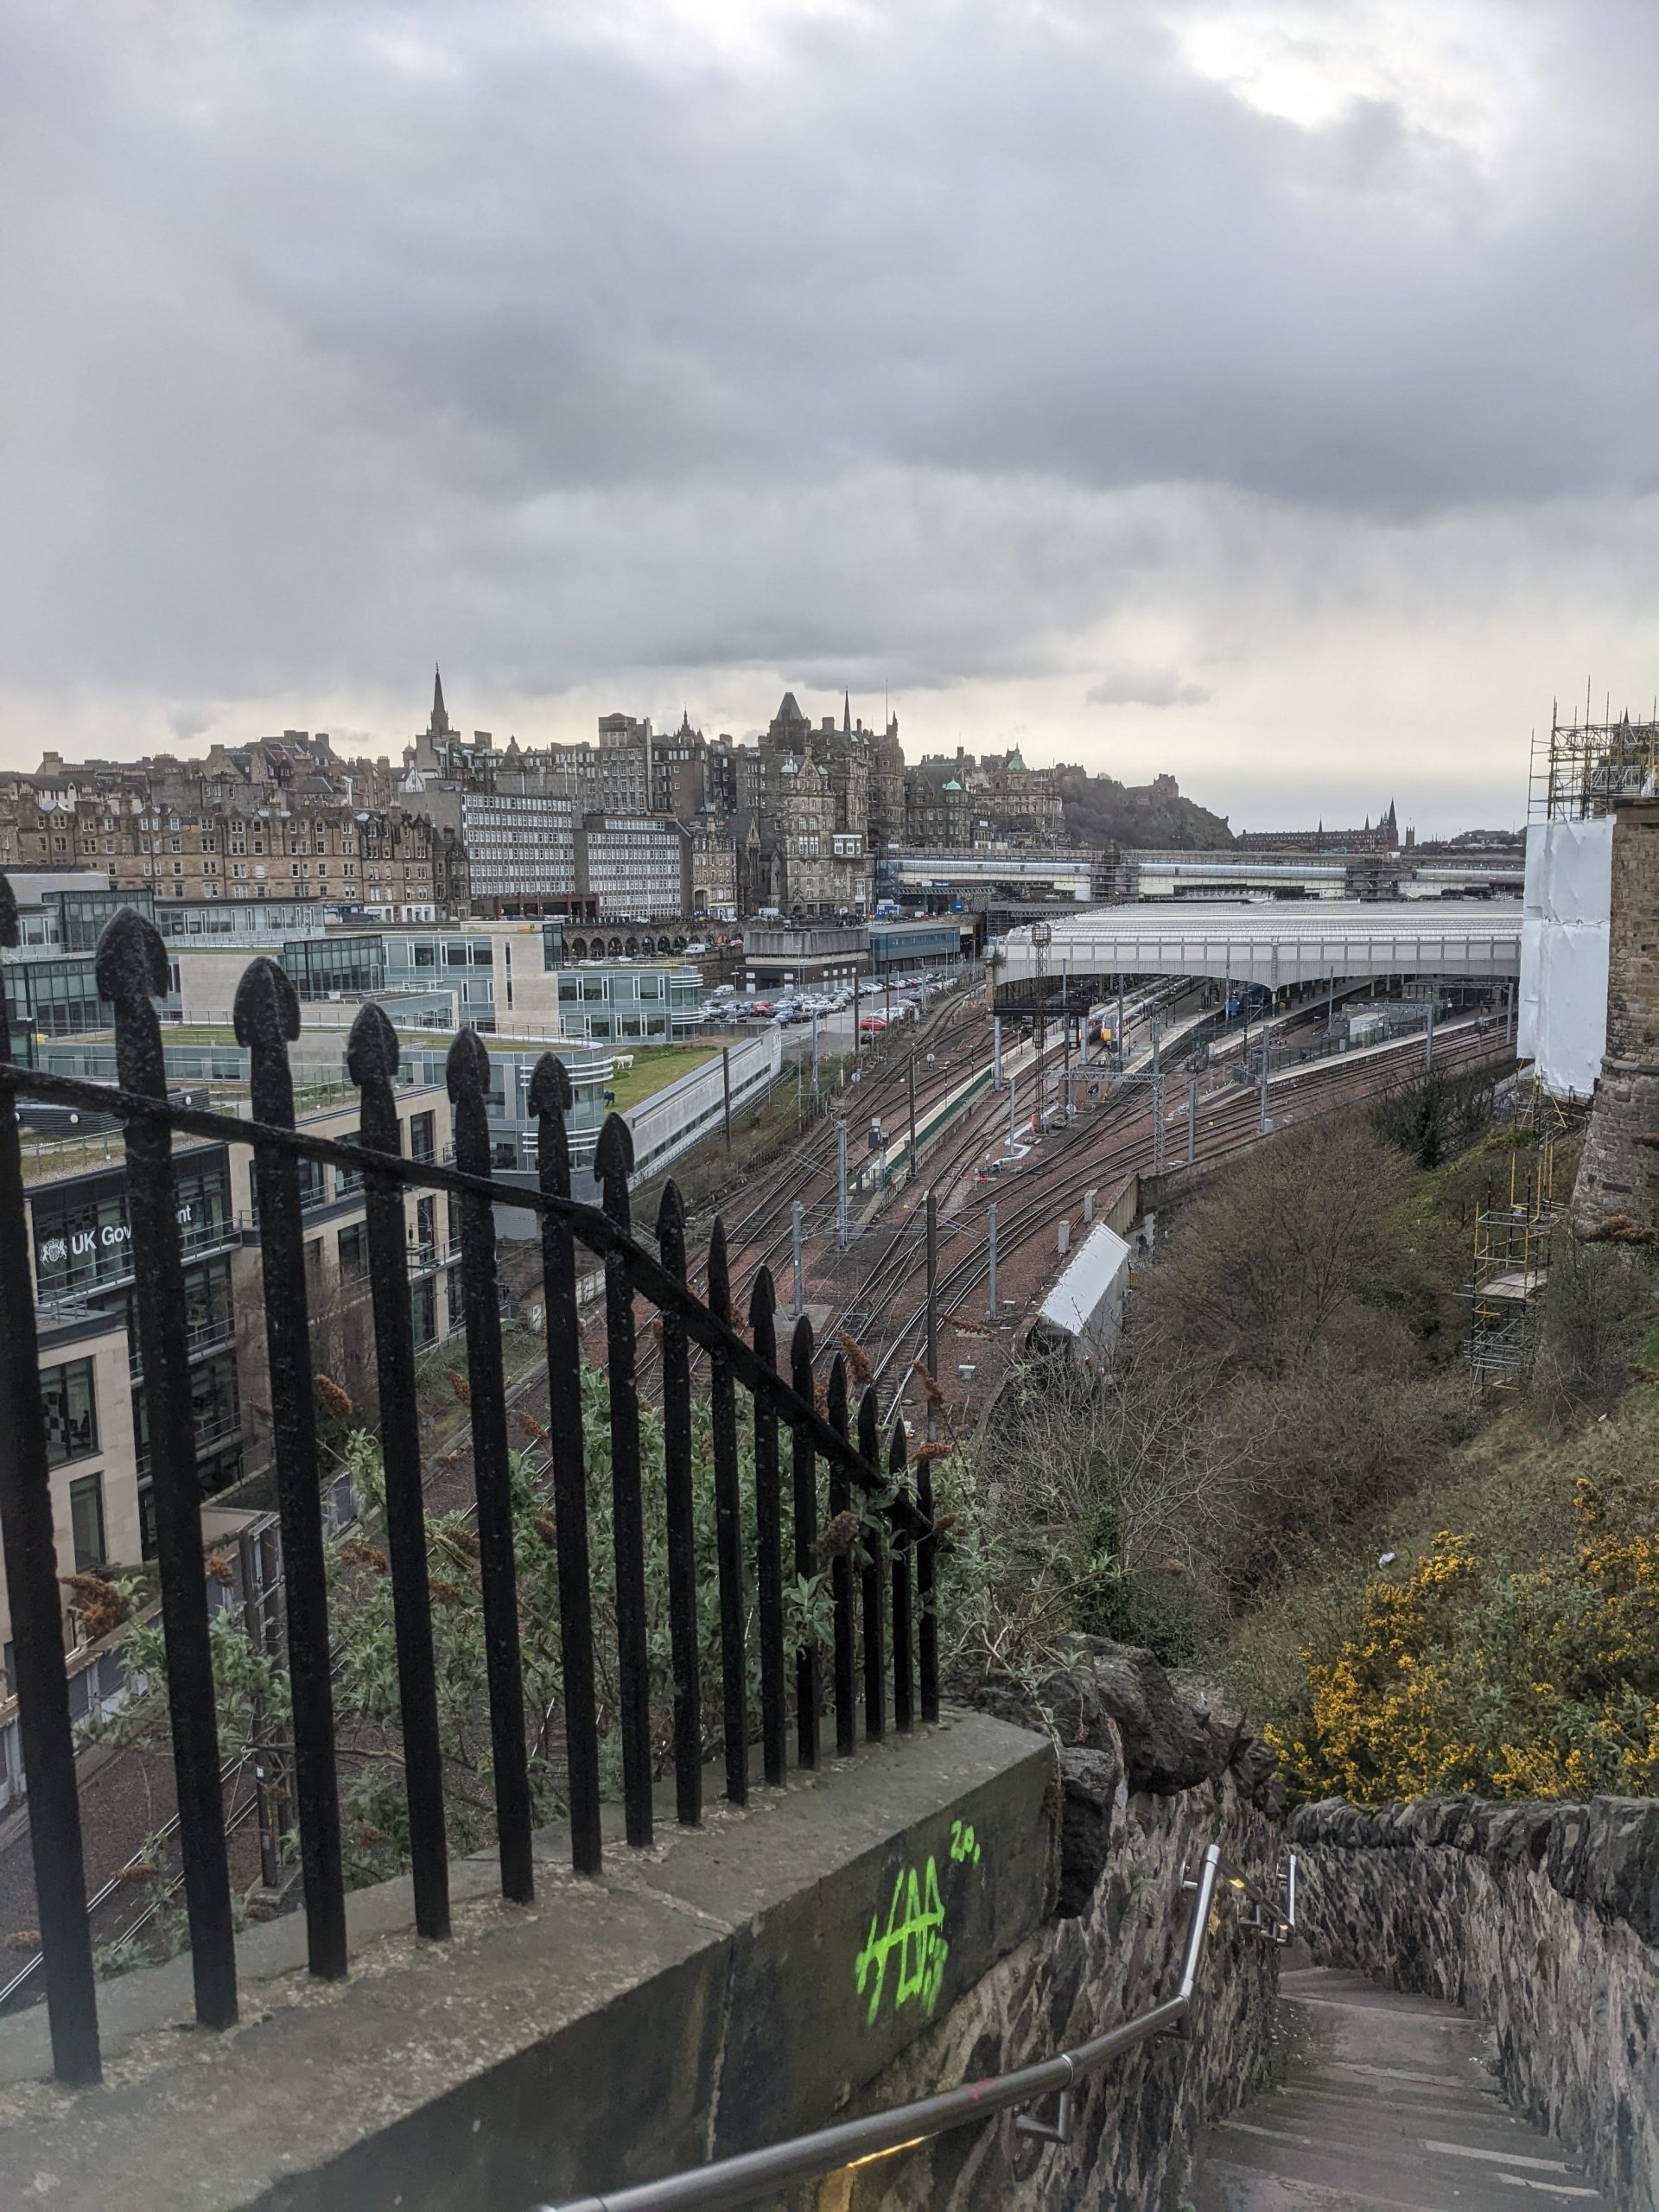 Schody v Edinburghu. V pozadí je krásny výhľad na mesto.